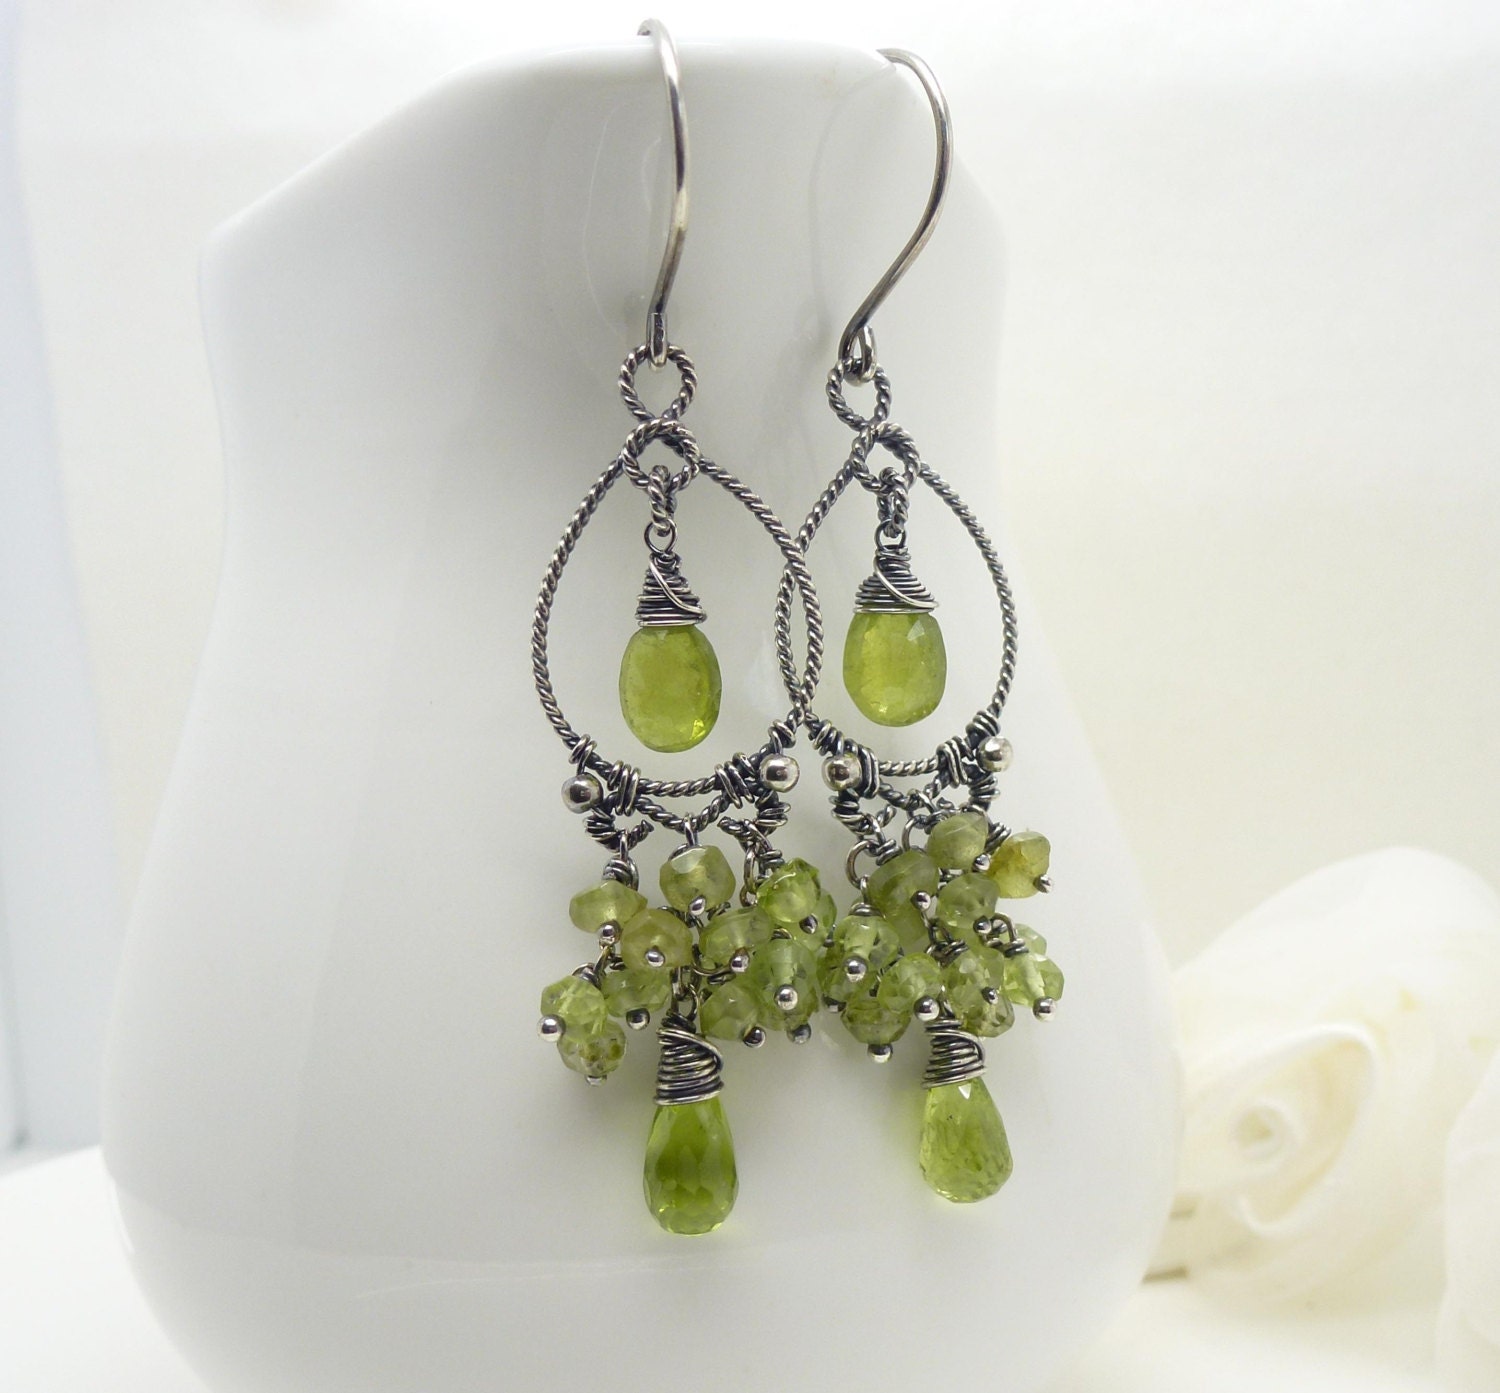 Green peridot earrings in sterling silver by CreativityJewellery